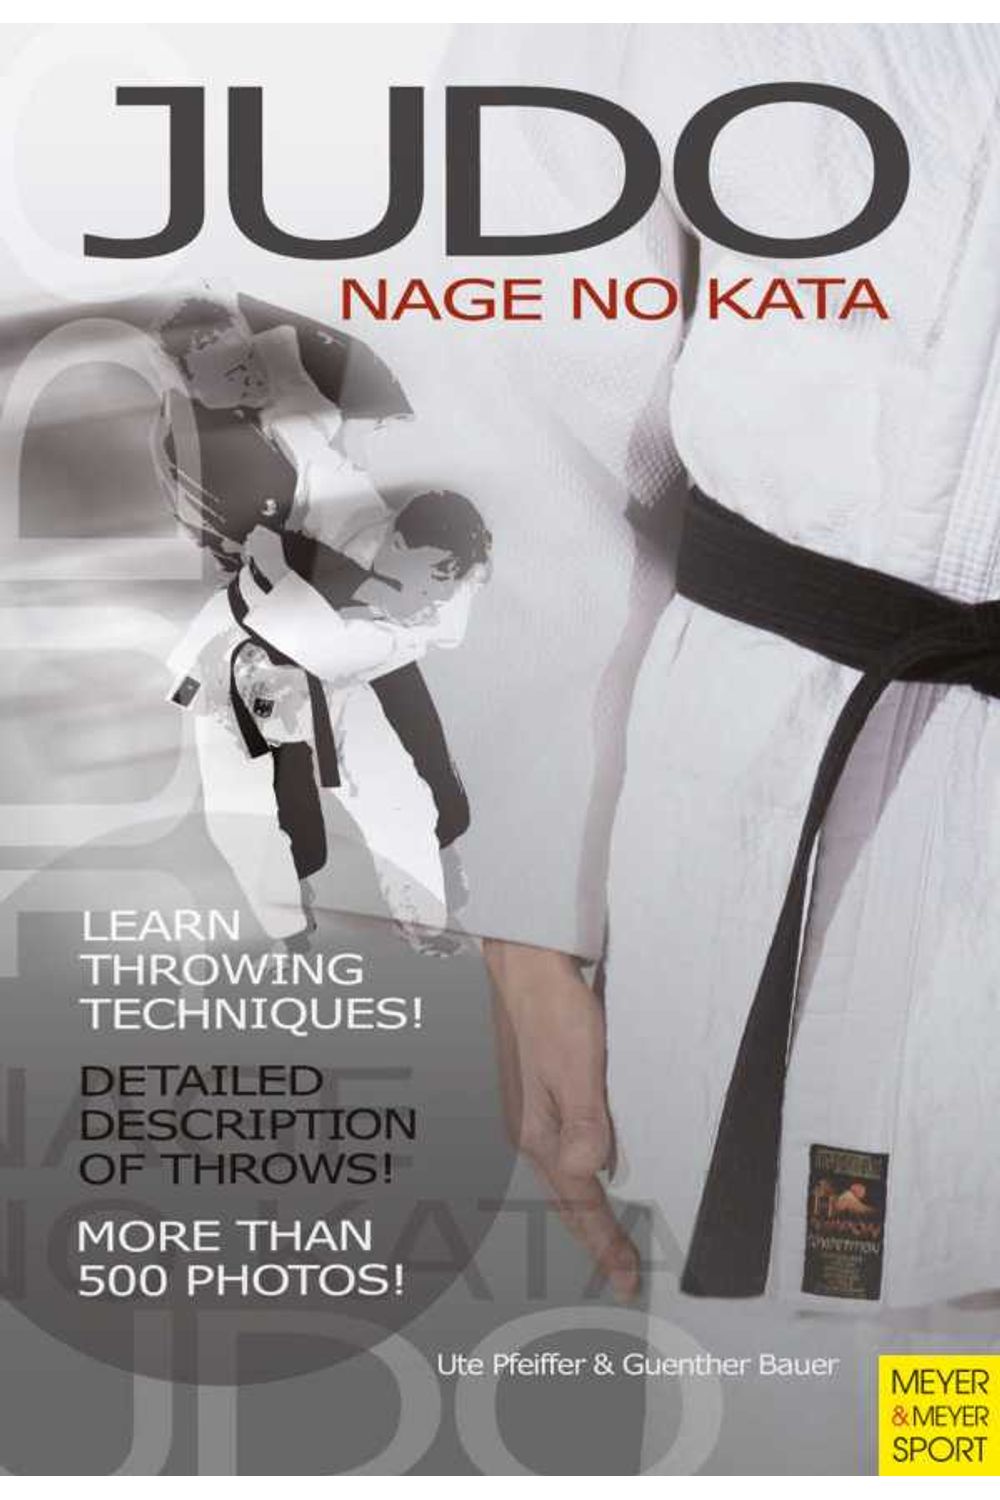 bw-judo-nage-no-kata-meyer-meyer-sport-9781841269573